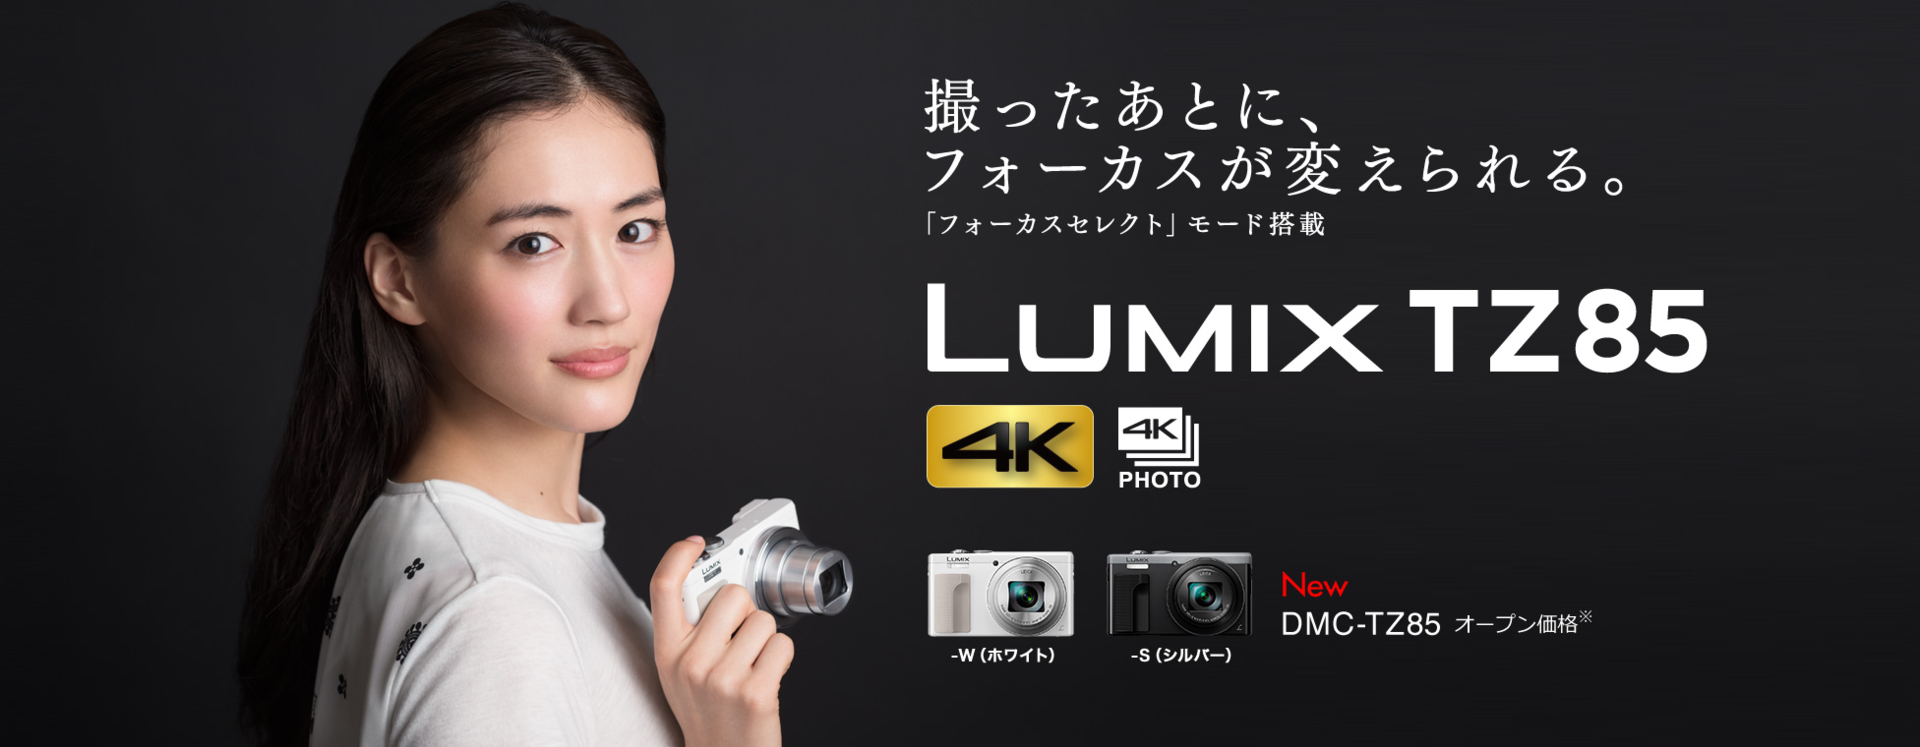 Cmで話題 綾瀬はるかの女子カメラはこれ Lumix Tz85 もう迷わない おすすめ女子カメラはこれだ